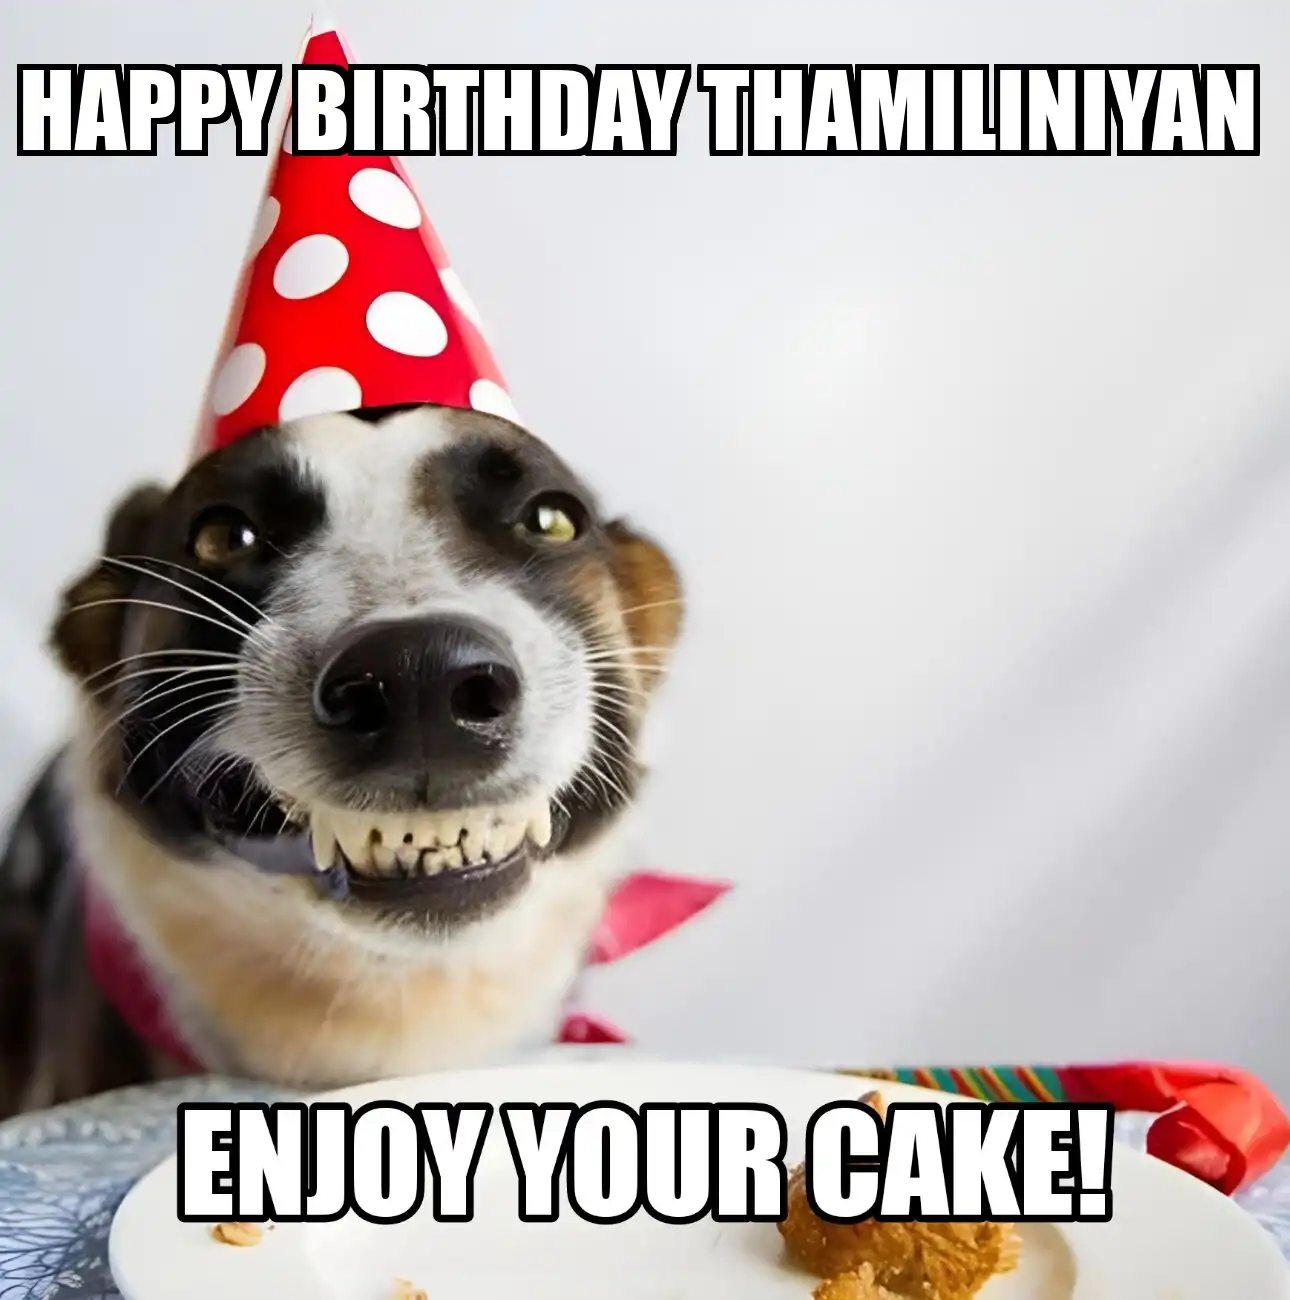 Happy Birthday Thamiliniyan Enjoy Your Cake Dog Meme